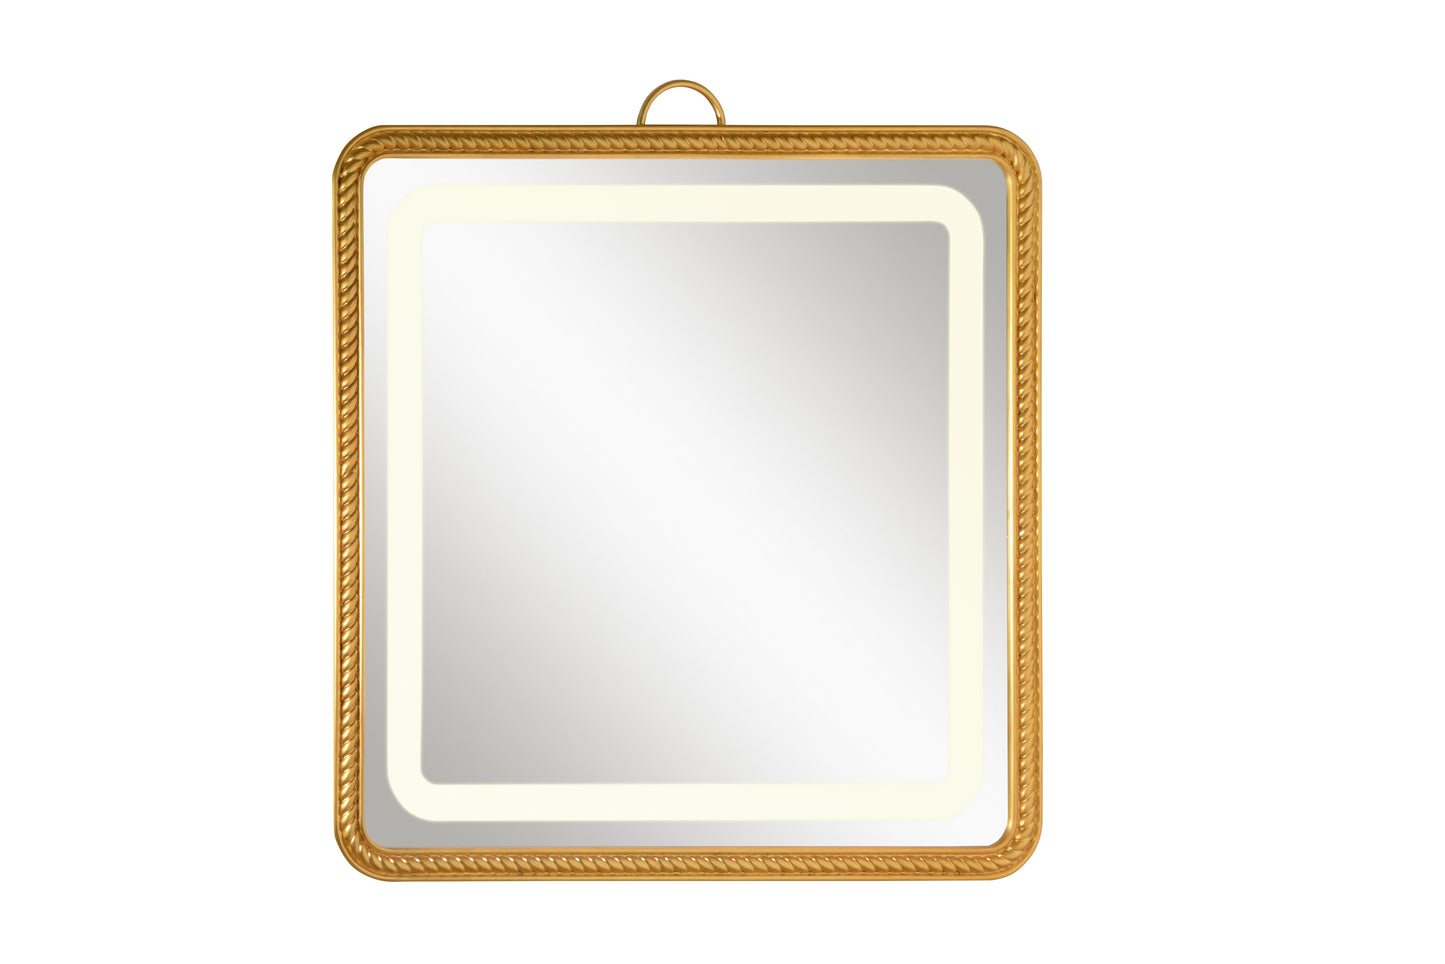 Gold leaf frame